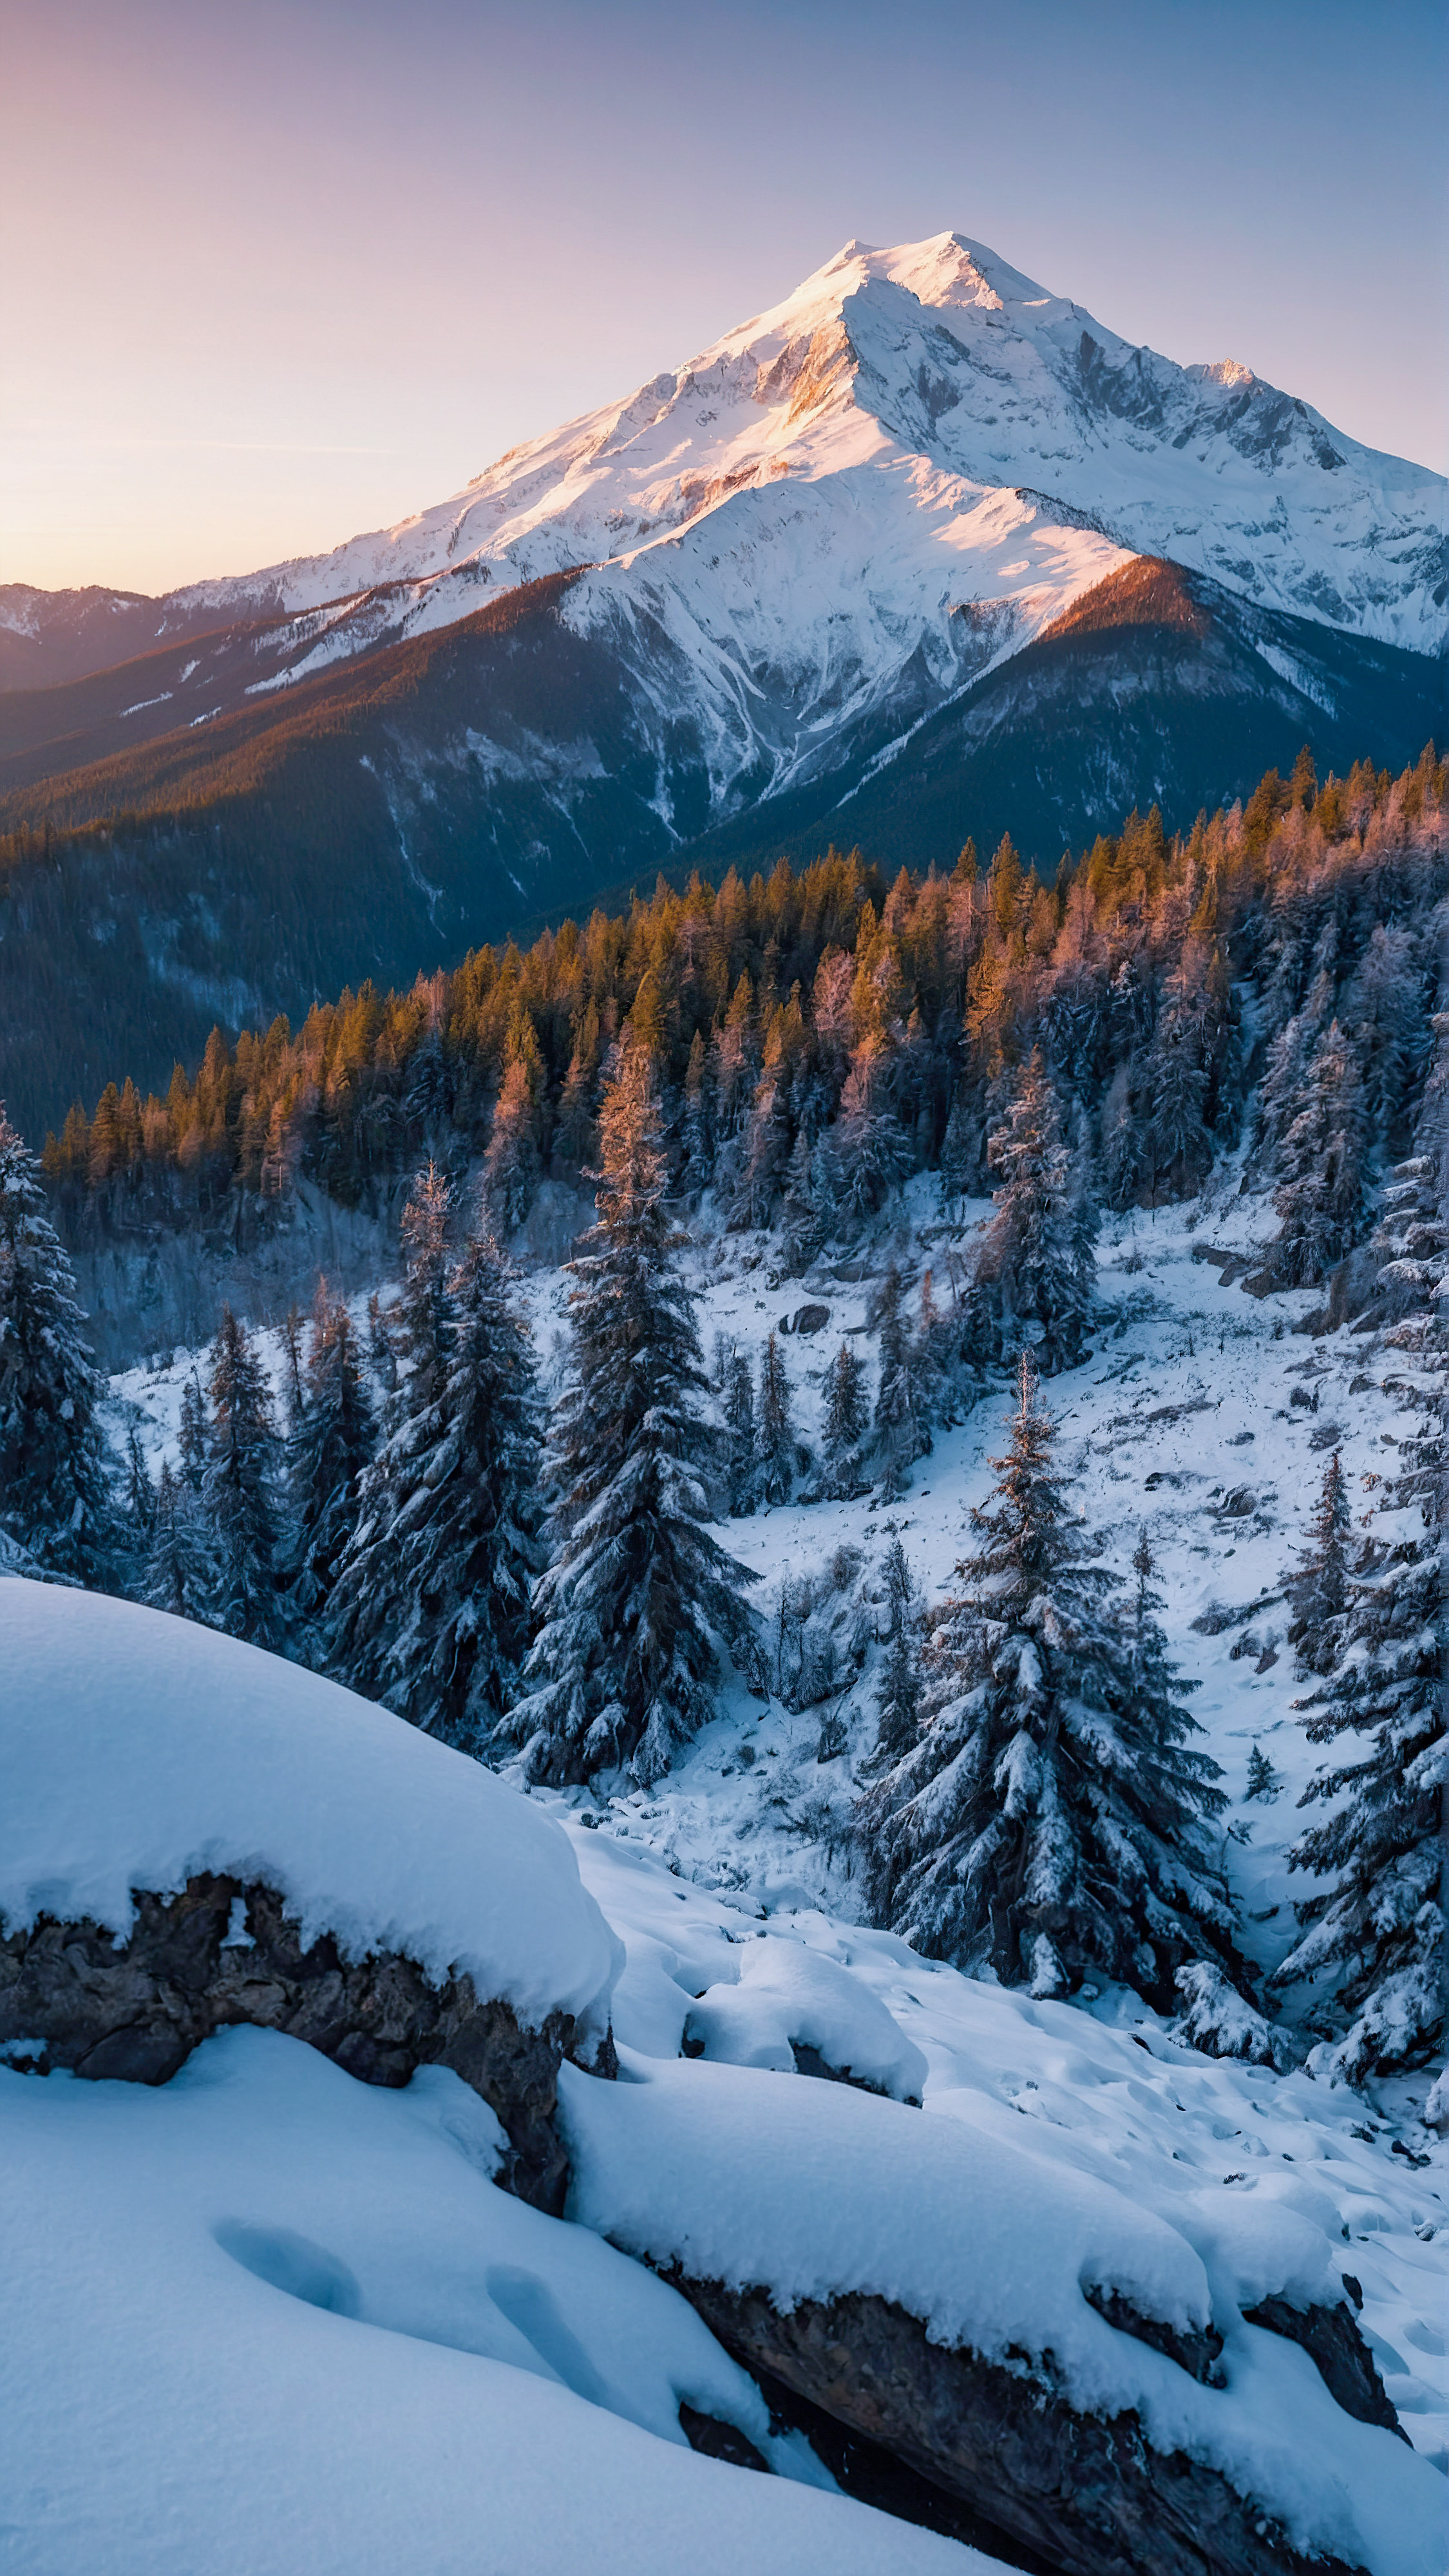 Perdez-vous dans la magie d'une vue à couper le souffle d'un sommet de montagne enneigé au milieu d'une forêt au coucher du soleil avec notre fond d'écran esthétique pour iPhone en 4K.